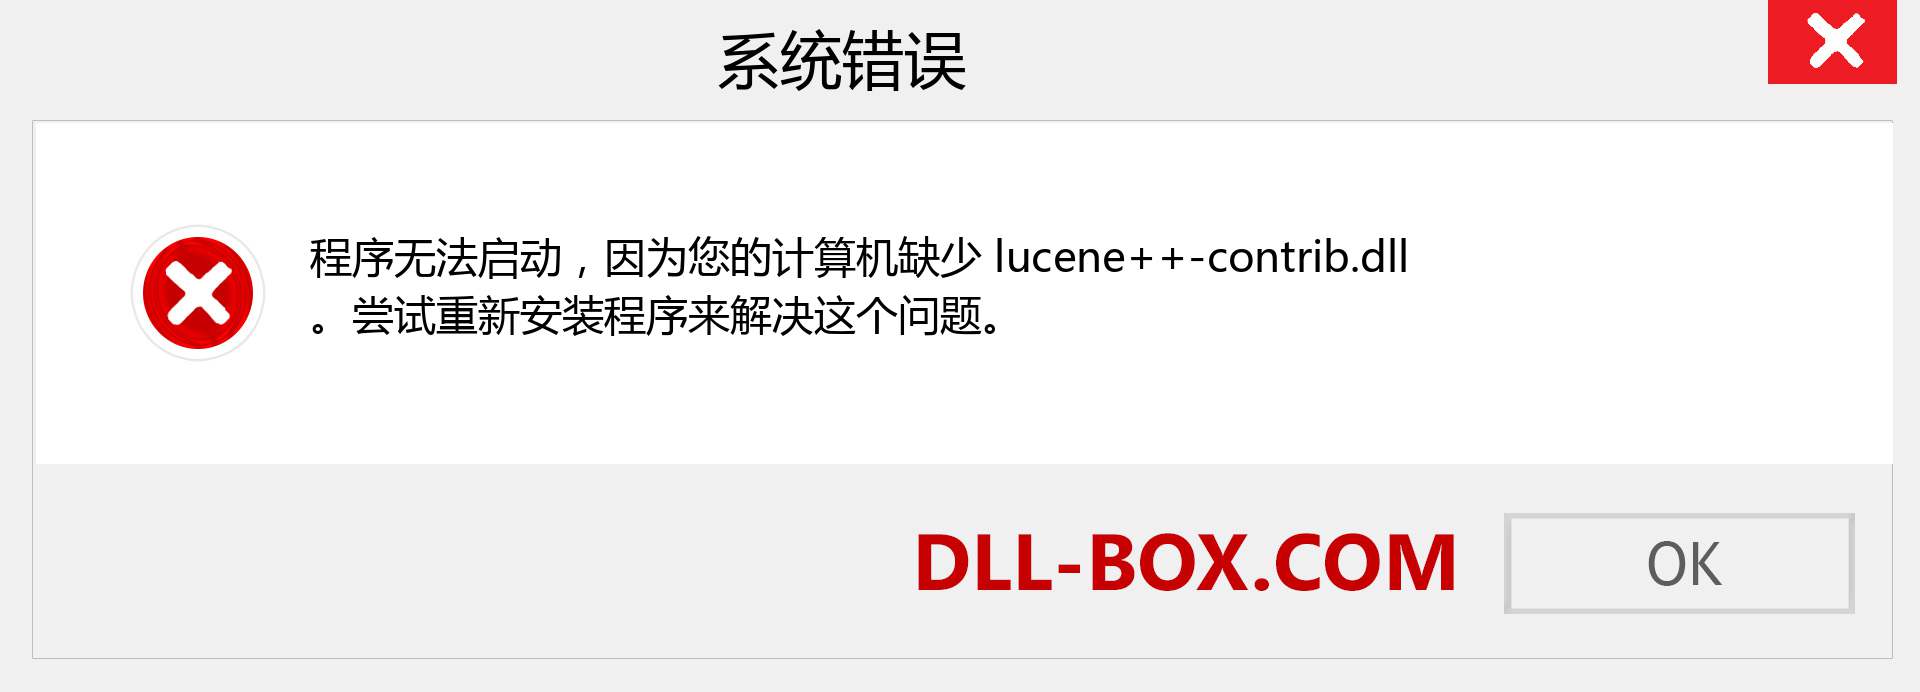 lucene++-contrib.dll 文件丢失？。 适用于 Windows 7、8、10 的下载 - 修复 Windows、照片、图像上的 lucene++-contrib dll 丢失错误